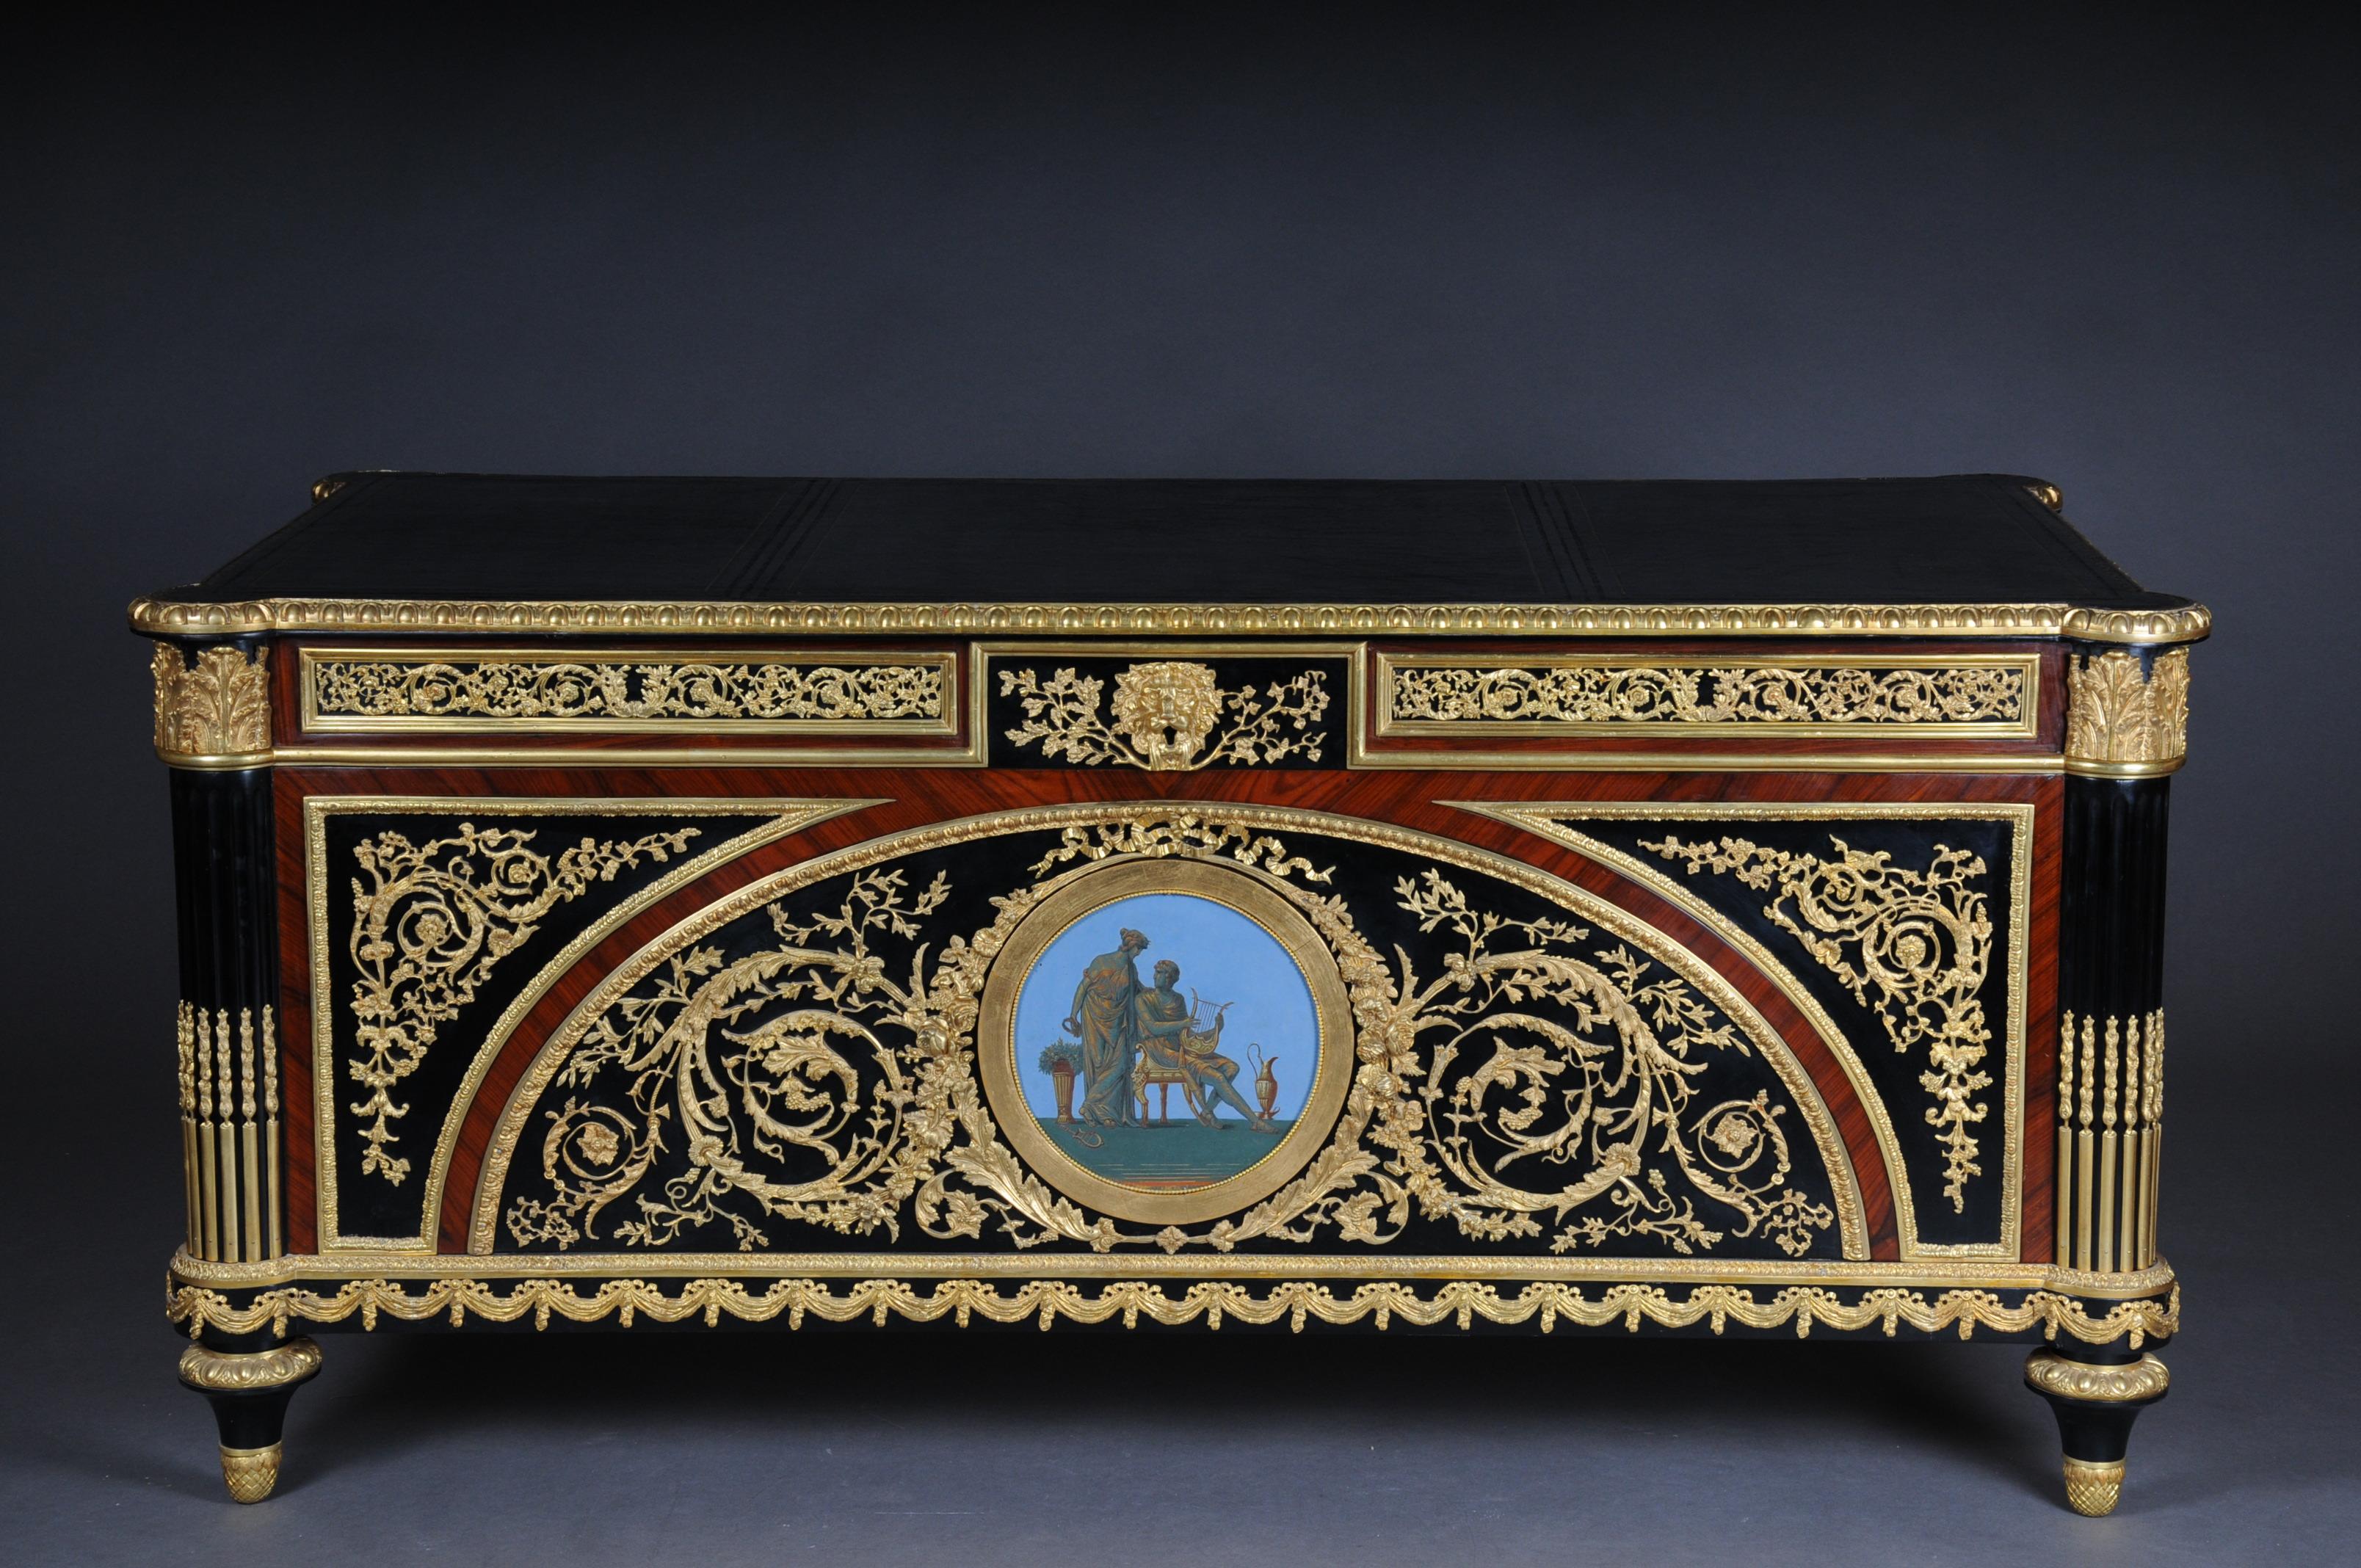 Kaiserliches Bureau plat / Schreibtisch im Stil von Louis XVI

Klavierschwarzes, poliertes Furnier auf massiver Eiche und Holz. Extrem fein ziseliert und reichhaltige Bronzeapplikationen. Rechteckiger Körper. Ein handgemaltes Bildabzeichen auf der